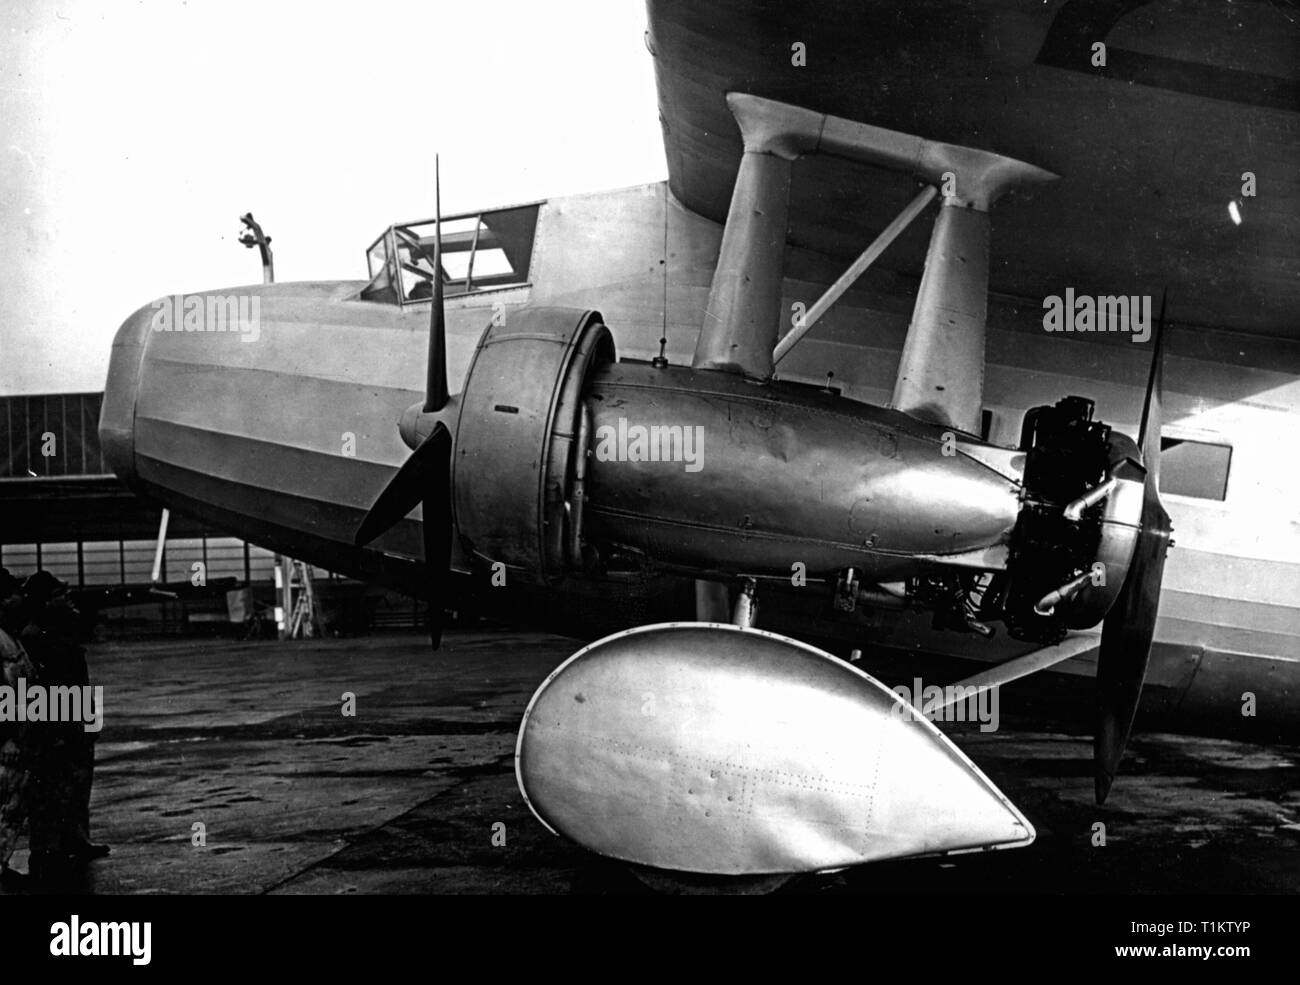 Trasporti / trasporto, aviazione, aerei per il trasporto passeggeri, Dornier Do K3, motore di sinistra, due Walter-Castor motori radiali, prototipo, circa 1931, Additional-Rights-Clearance-Info-Not-Available Foto Stock